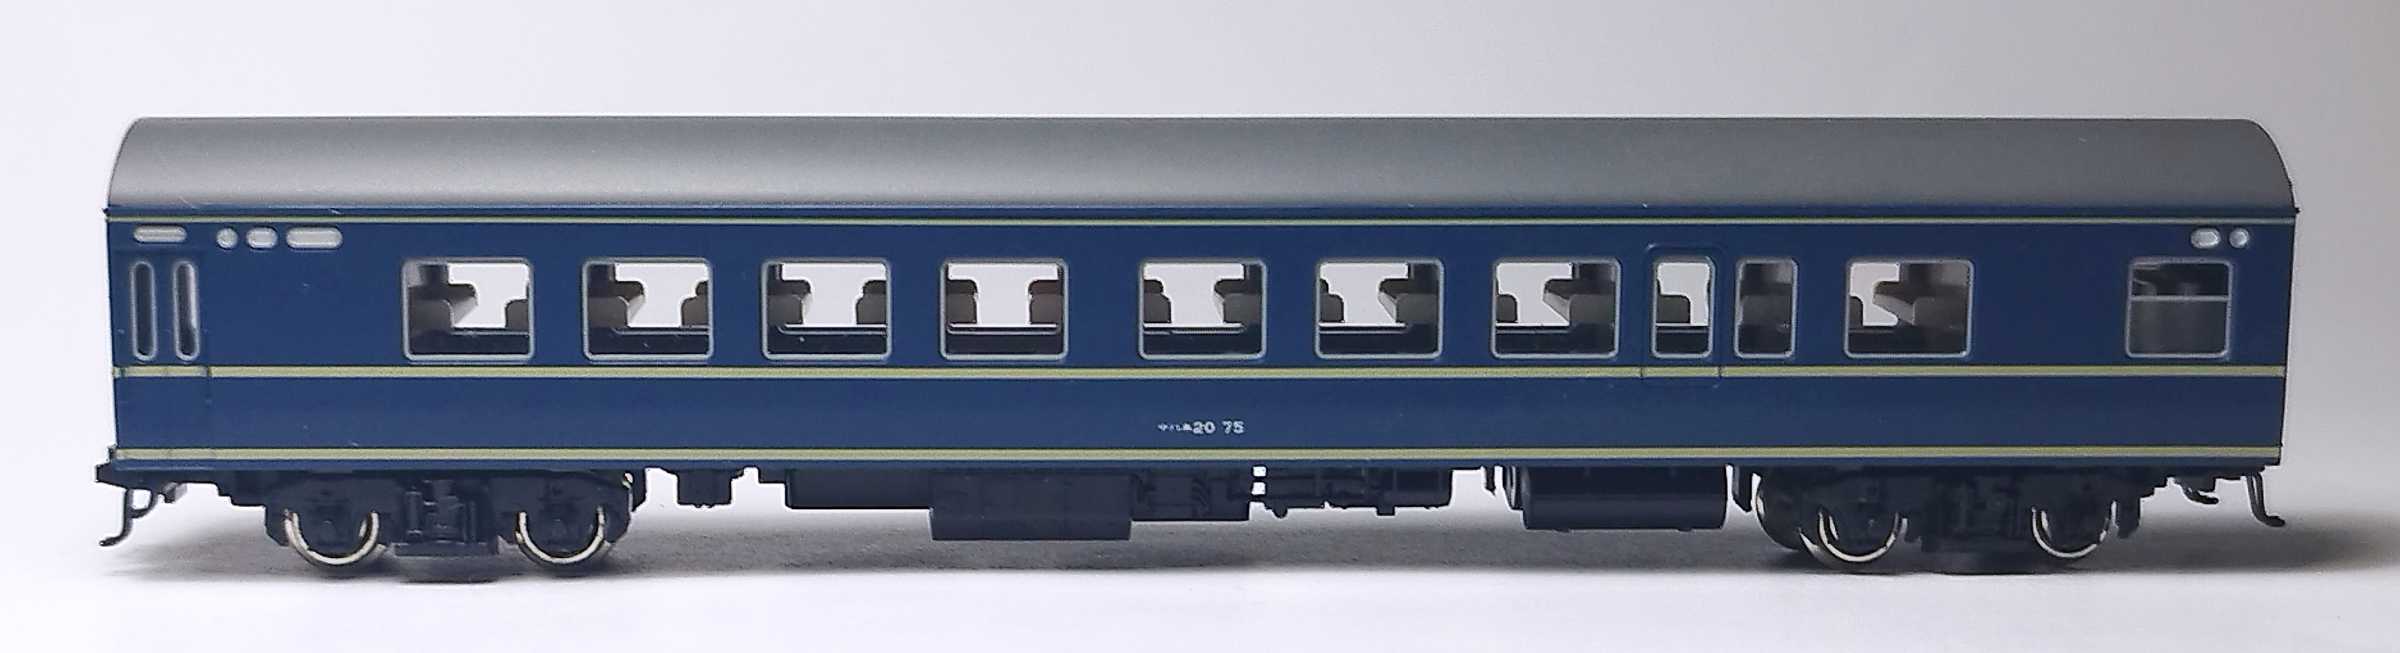 KATO 20系客車の整理 | うなきちrail - 楽天ブログ